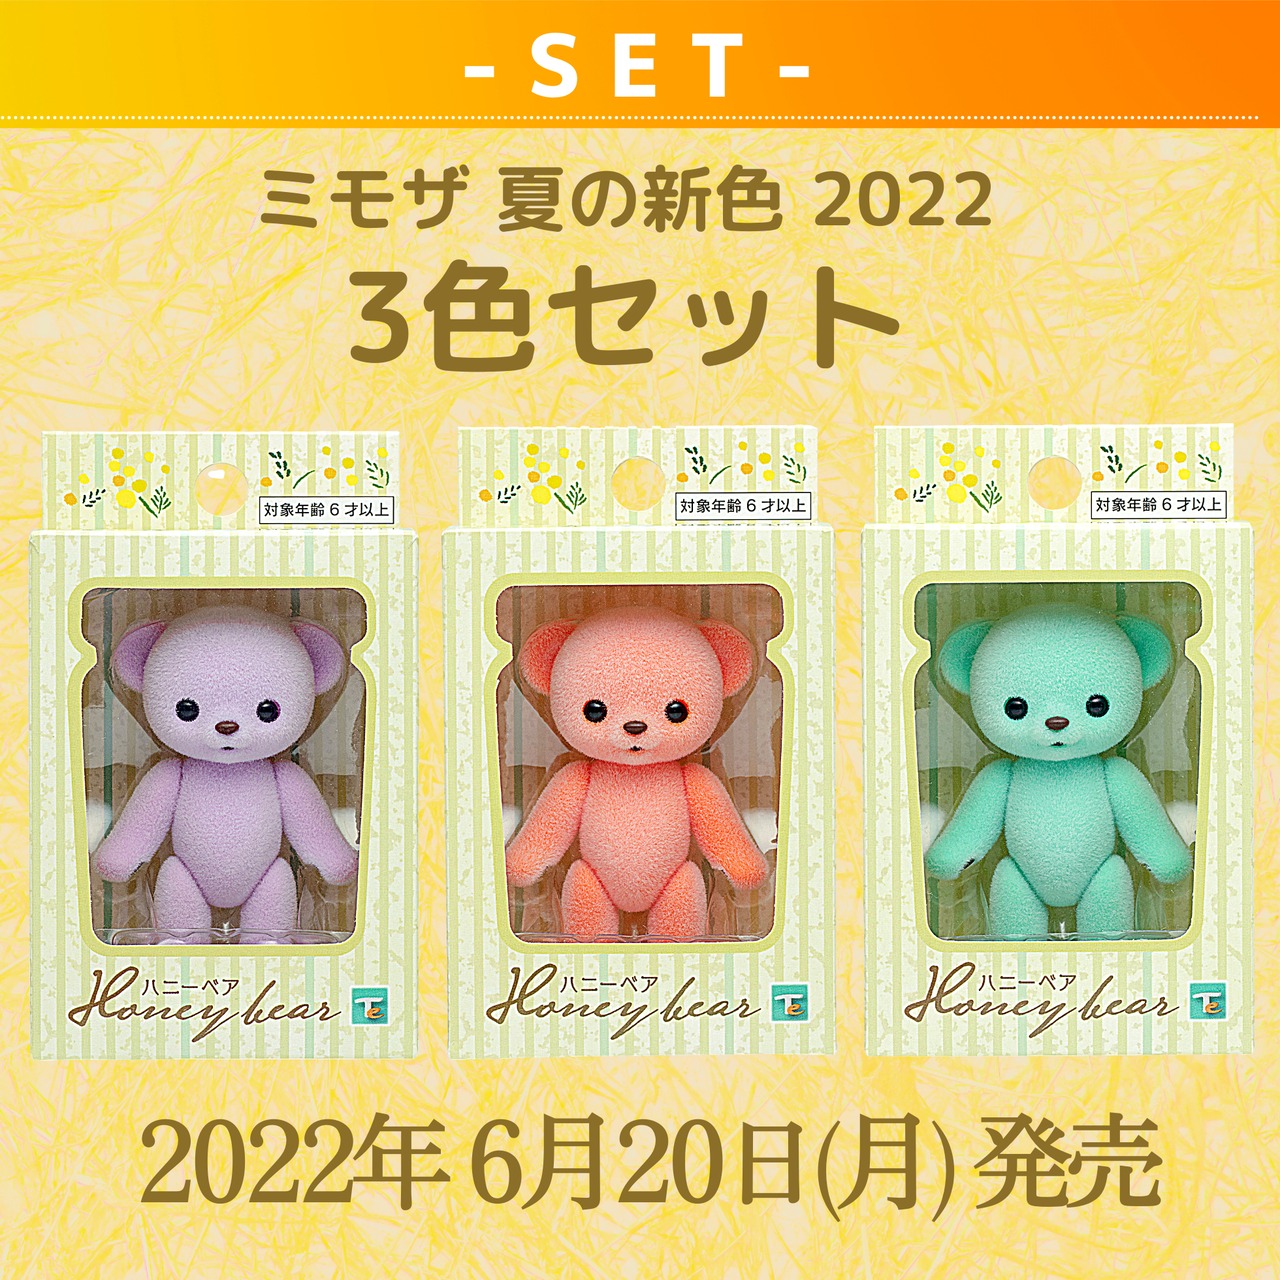 【セット商品】ハニーベア ミモザ 夏の新色 2022 3色セット